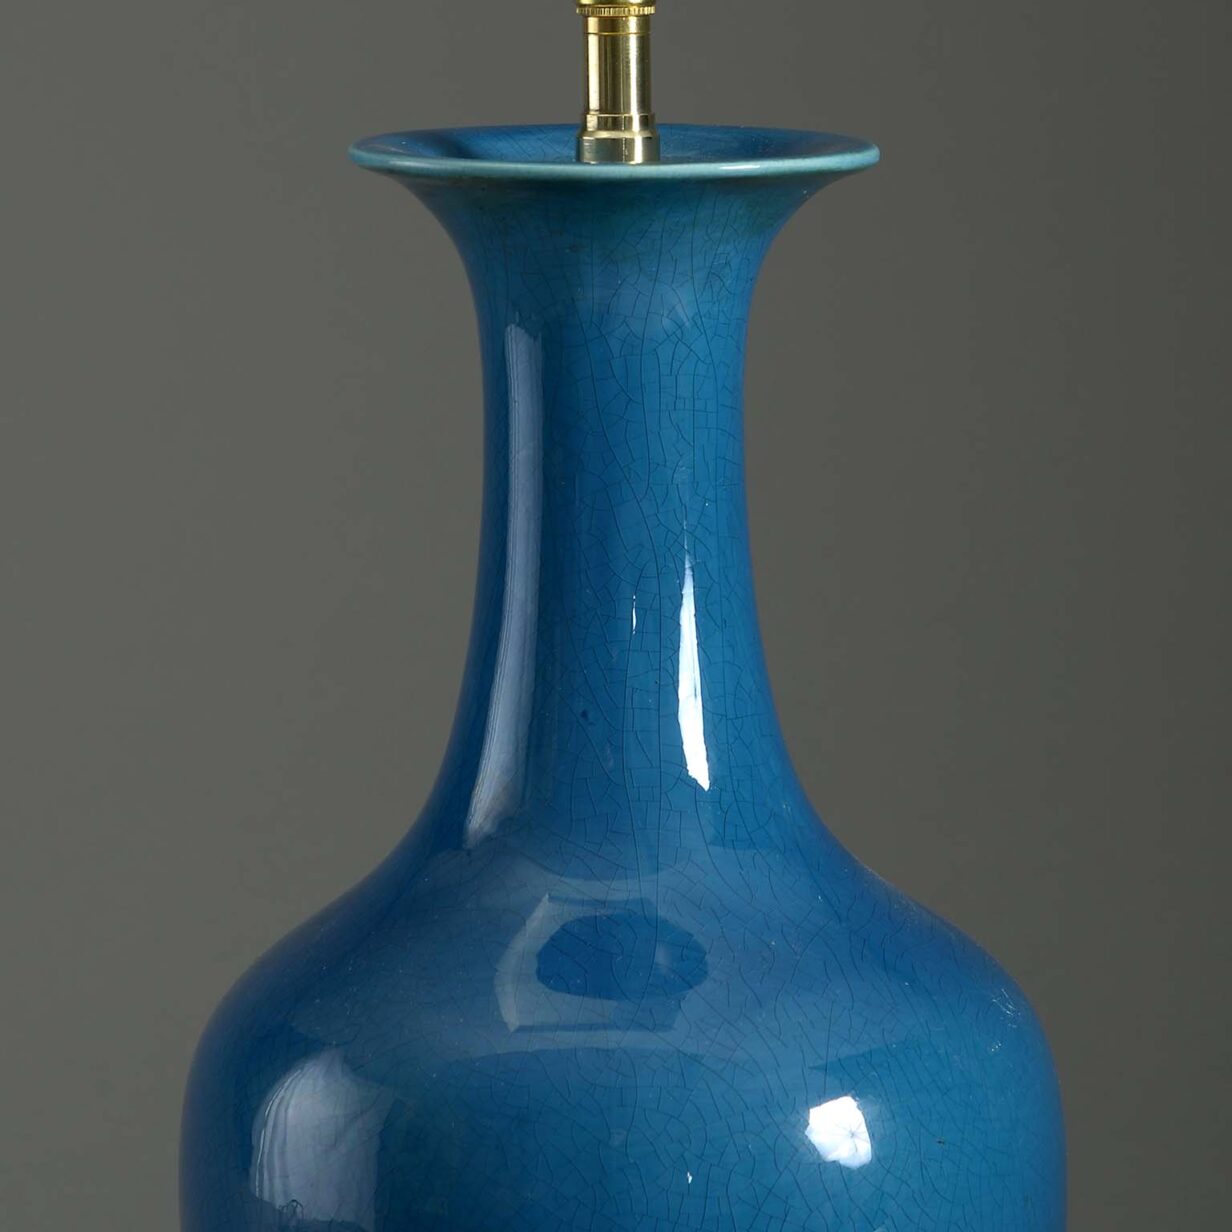 Turquoise bottle vase lamp